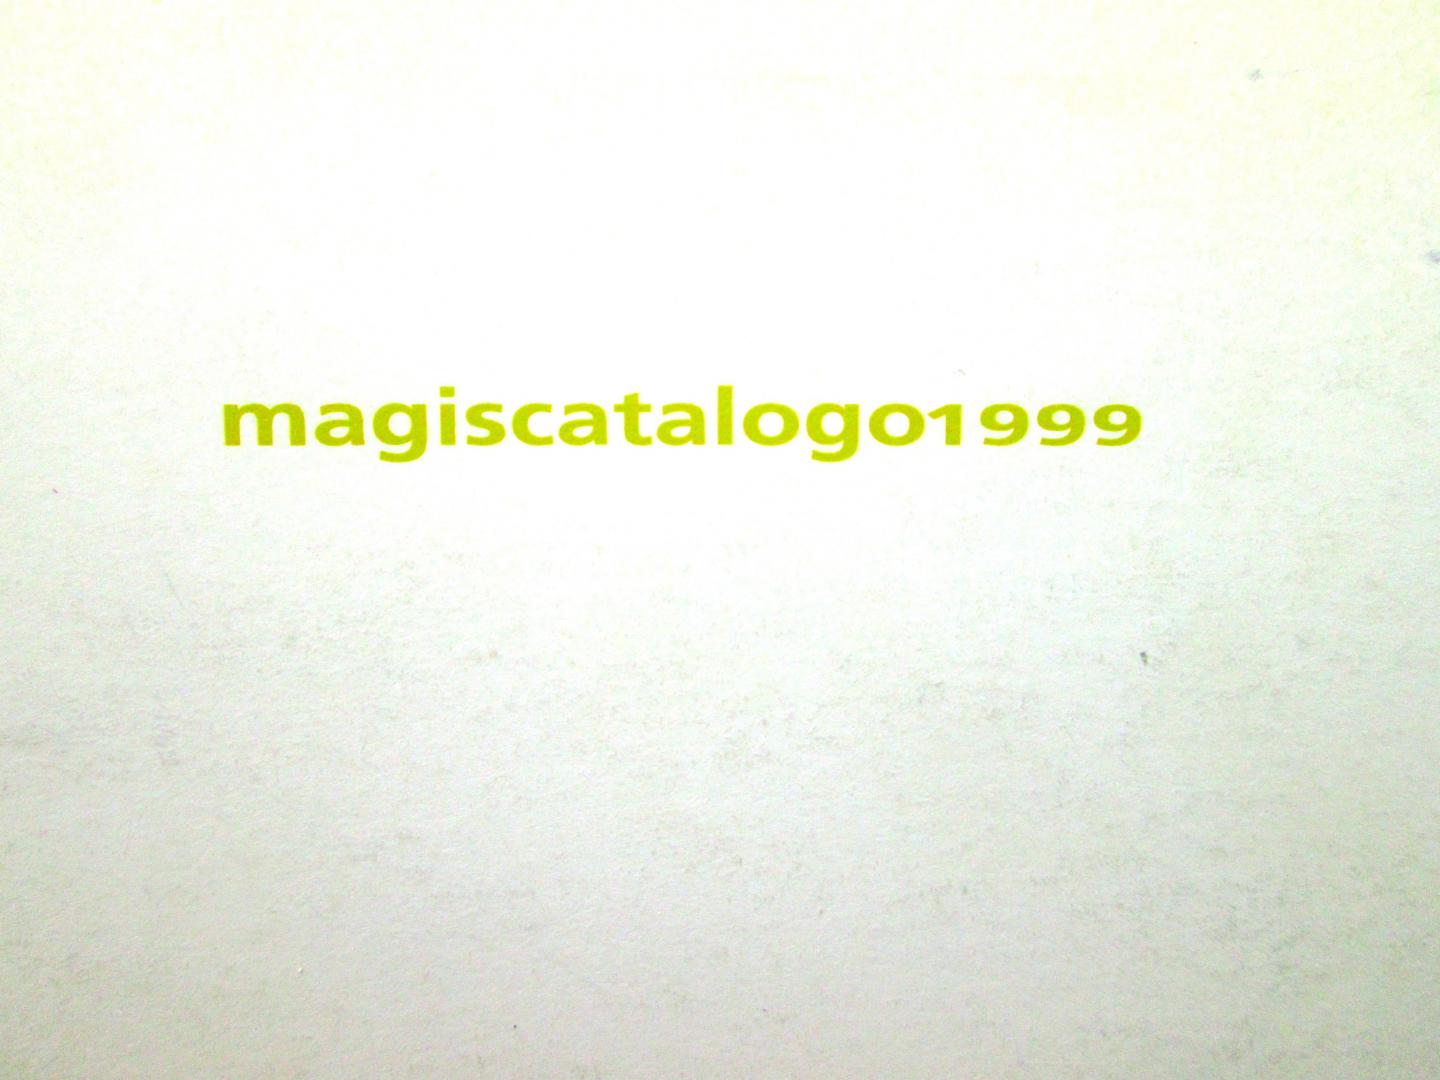 Magis - Magis productcatalogus, met designobjecten uit de jaren 90 van bekende ontwerpers als James Irvine, Toshiyuki Kita, Marc Berthier, Jean Marie Massaud, Stefano Giovannoni, Andries van Onck, Marco Ferreri etc